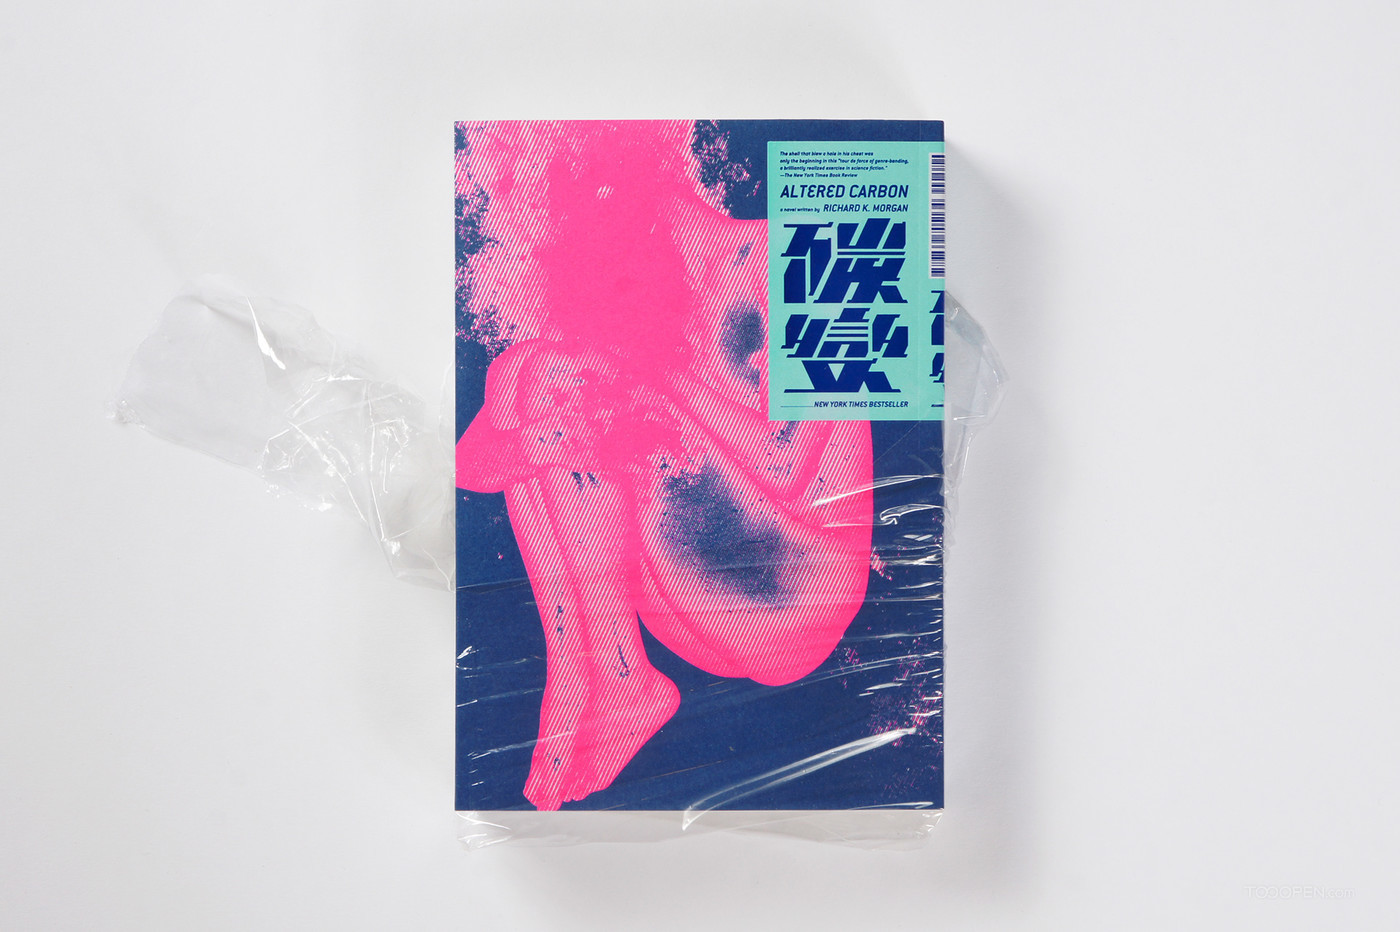 《碳变》艺术人物封面书籍装帧设计作品欣赏-01